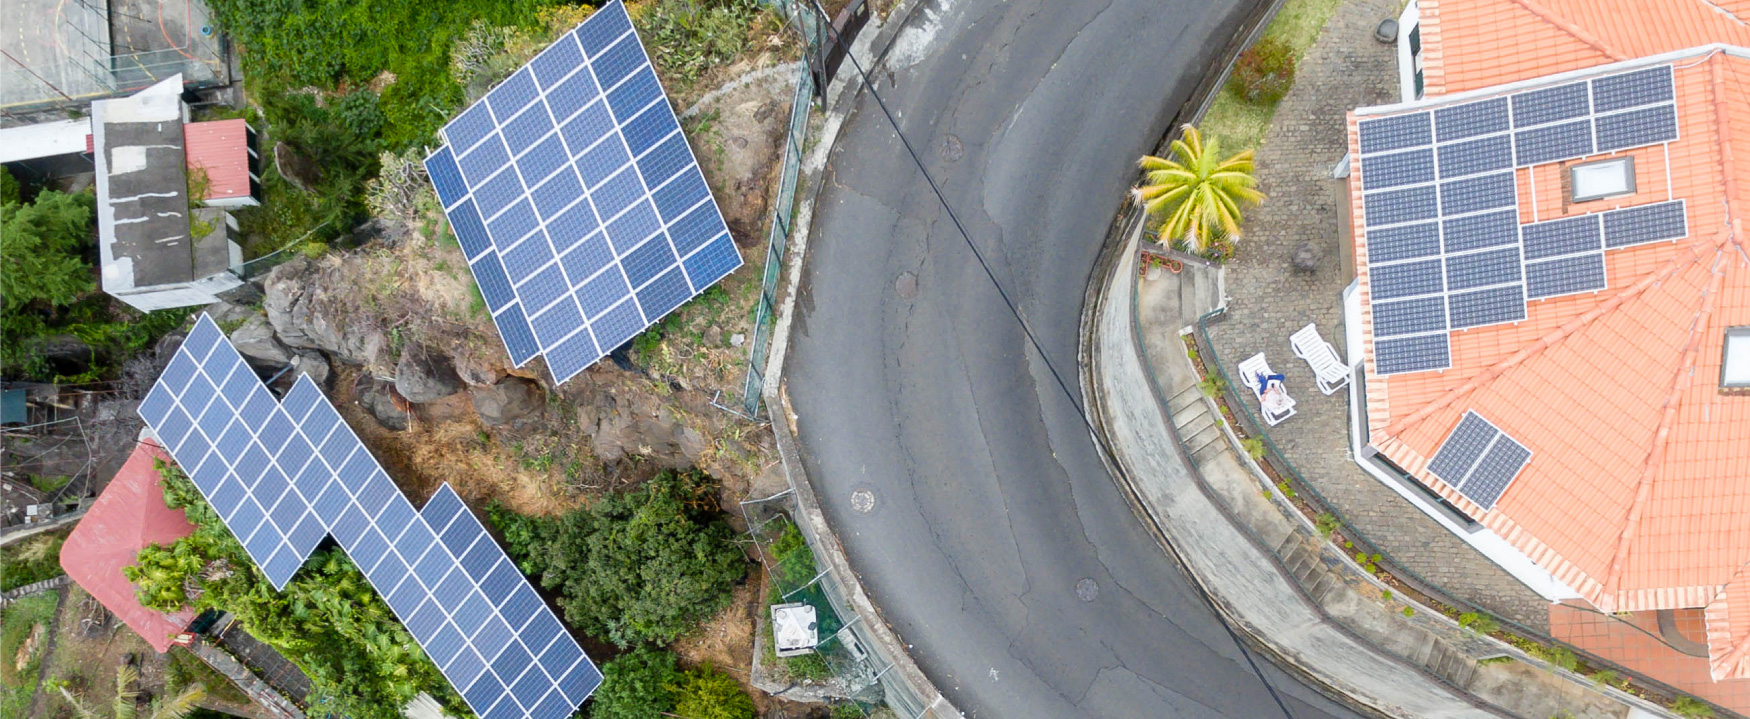 一张航拍照片显示了热带山坡上的房屋，屋顶上有太阳能电池板。